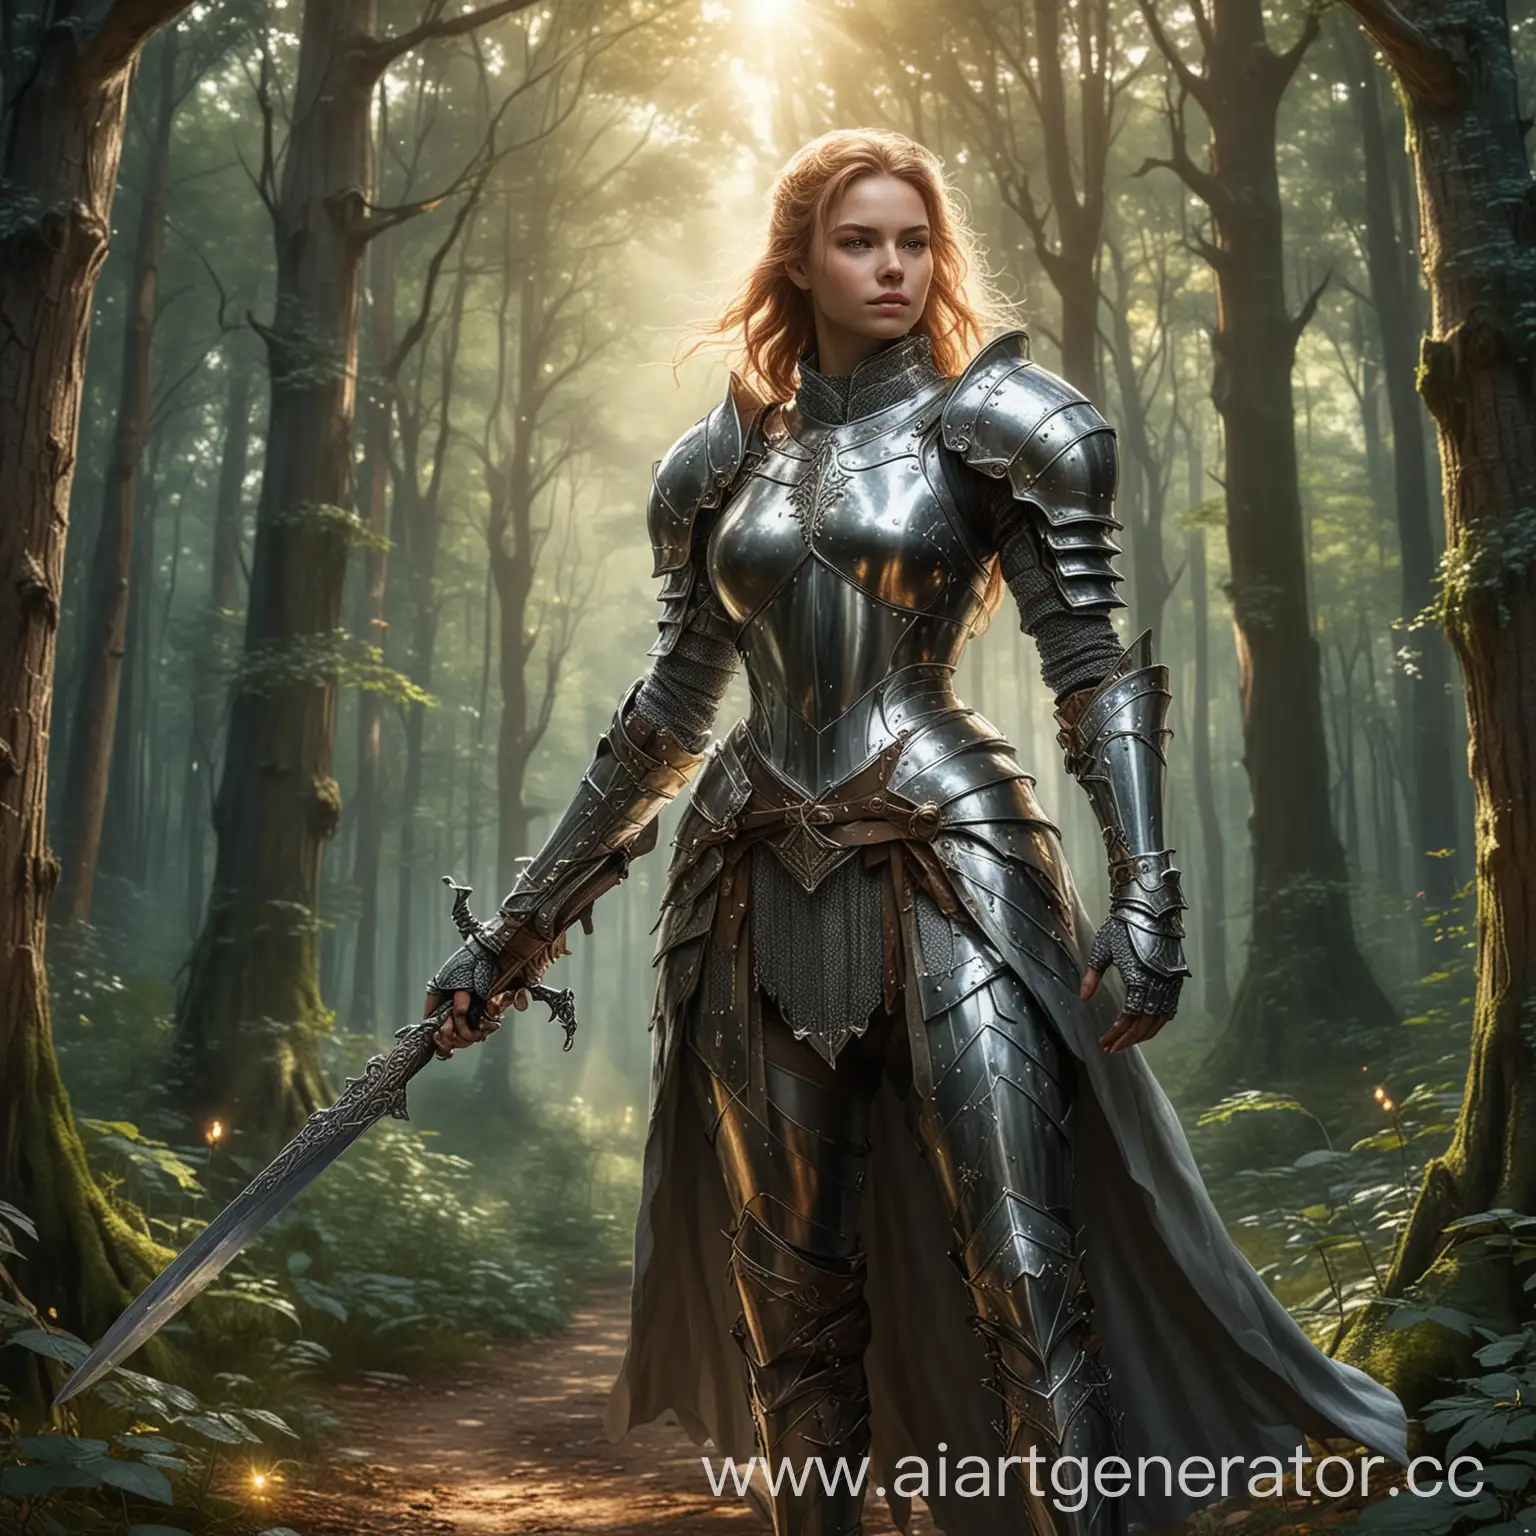 нарисуй рисунок с изображением рыцаря женщины в металлических латах с мечом в левой руке, на фоне сказочного леса